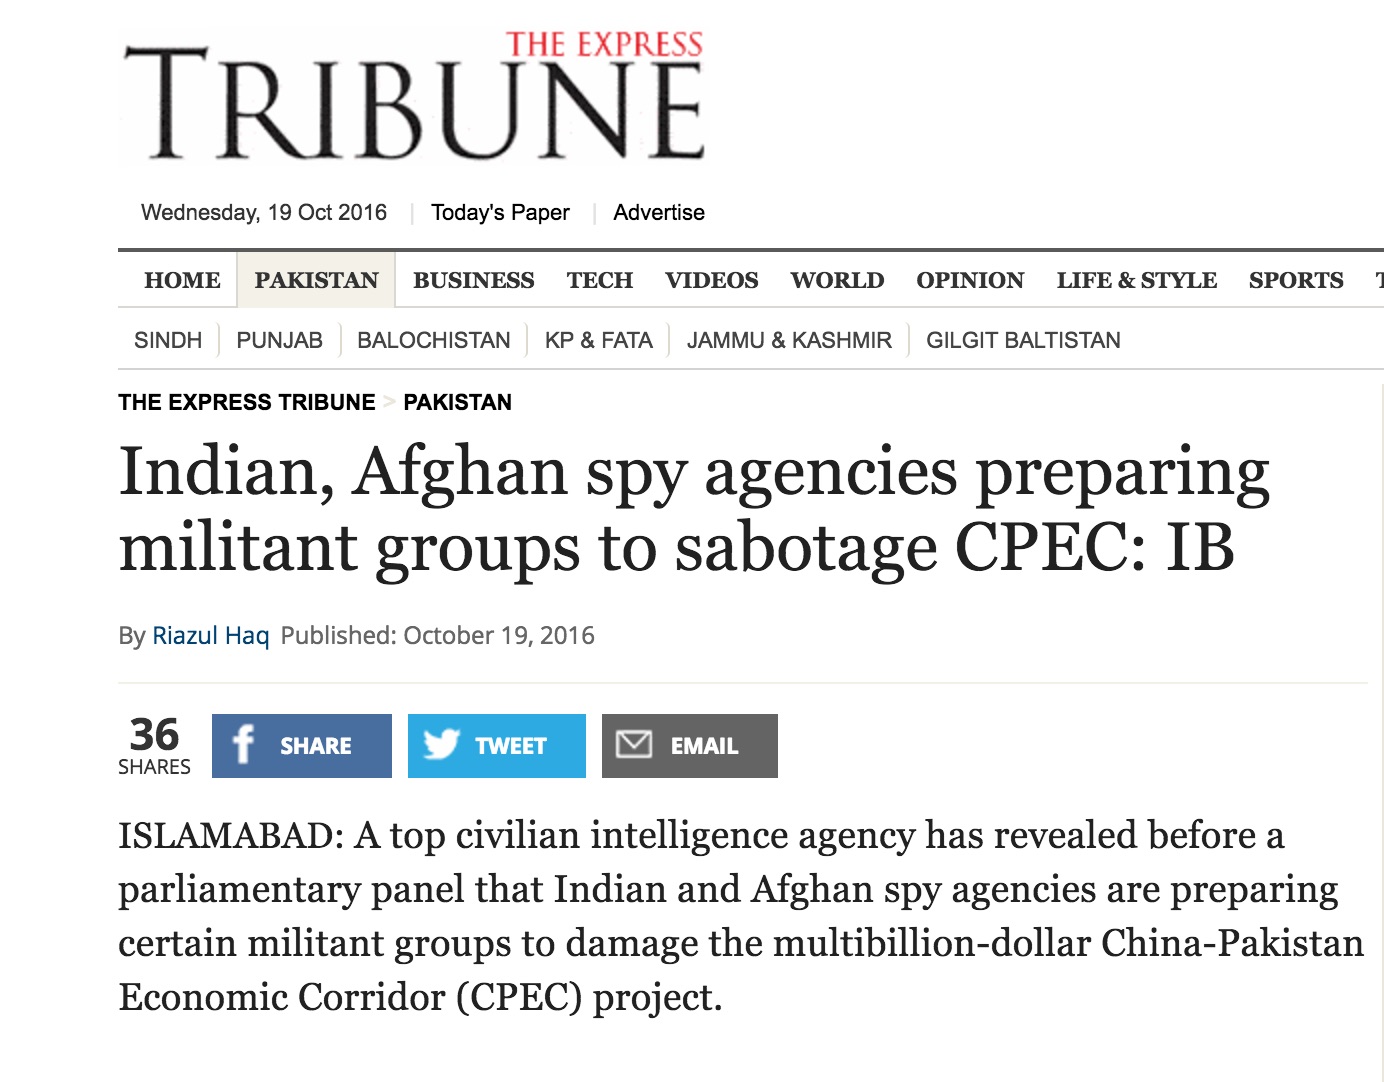 Le Pakistan accuse les services de renseignement indiens de se fournir en armes et soldats en Afghanistan pour nuire à Islamabad. Copie d'écran de The Tribune Express, le 19 octobre 2016.